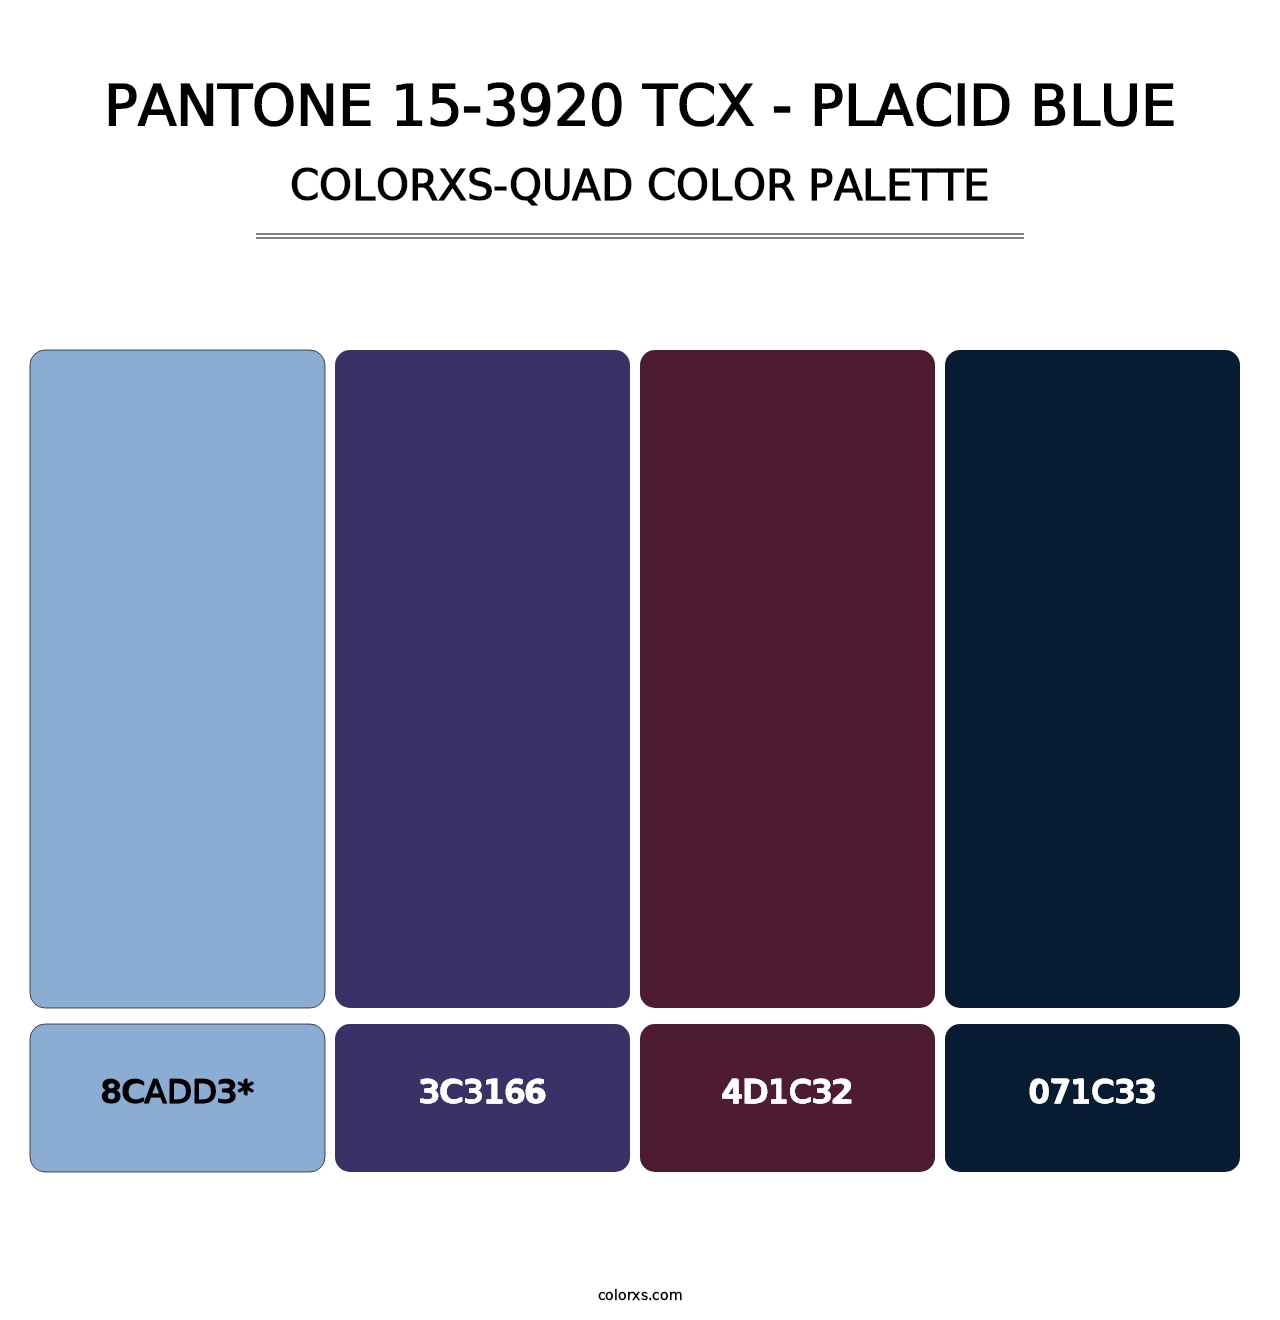 PANTONE 15-3920 TCX - Placid Blue - Colorxs Quad Palette